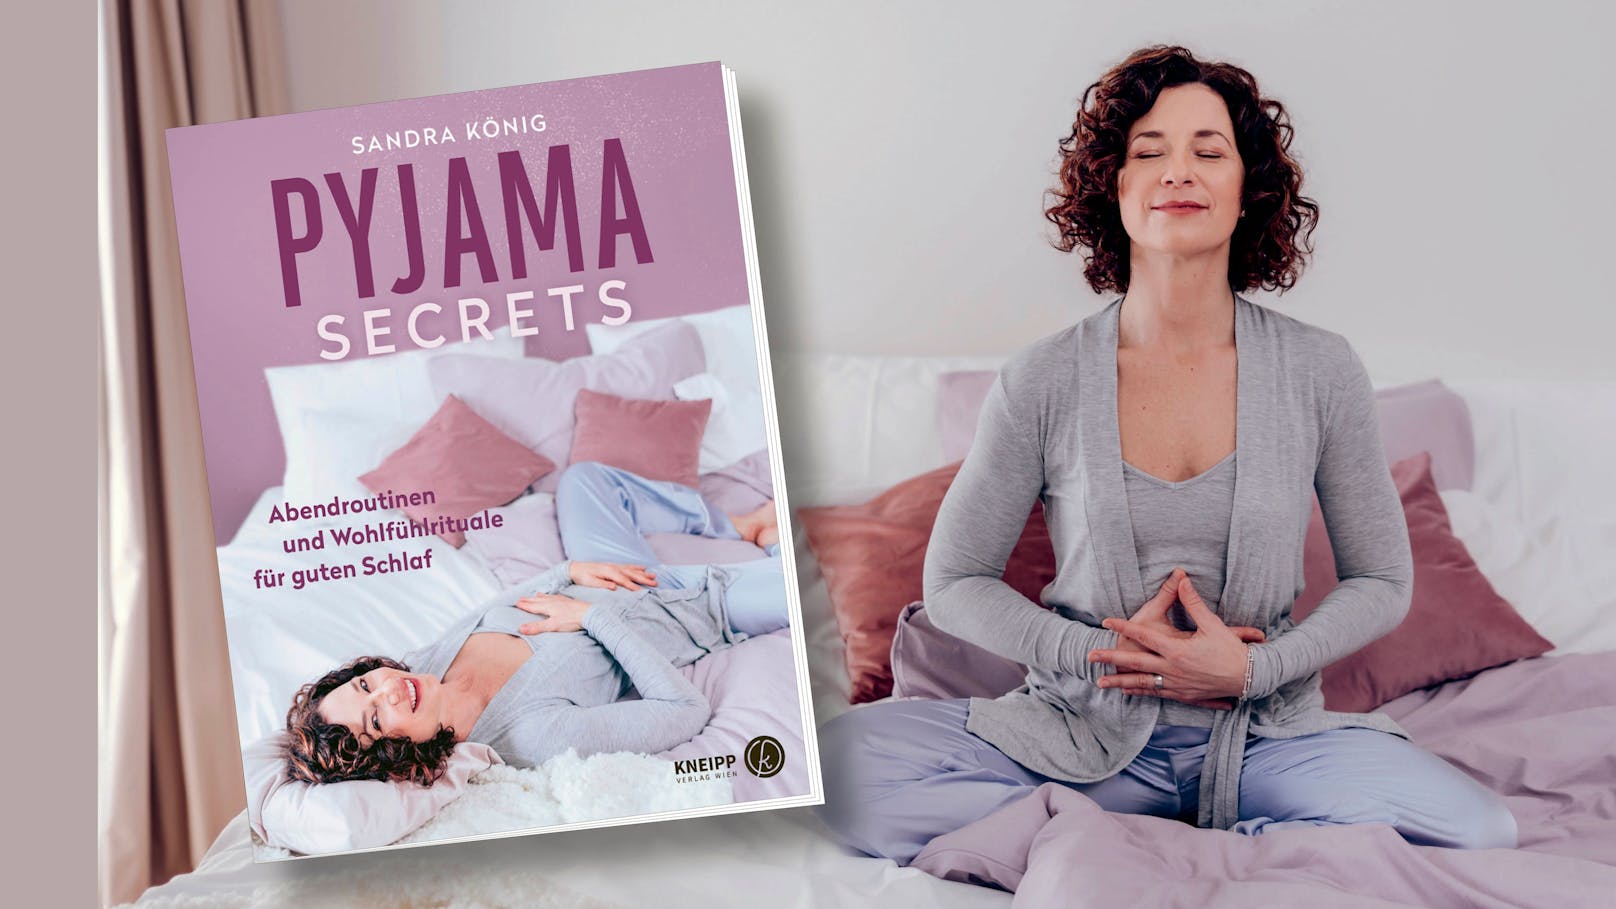 Pyjama Secrets - Ö3-Star hilft nun beim Einschlafen